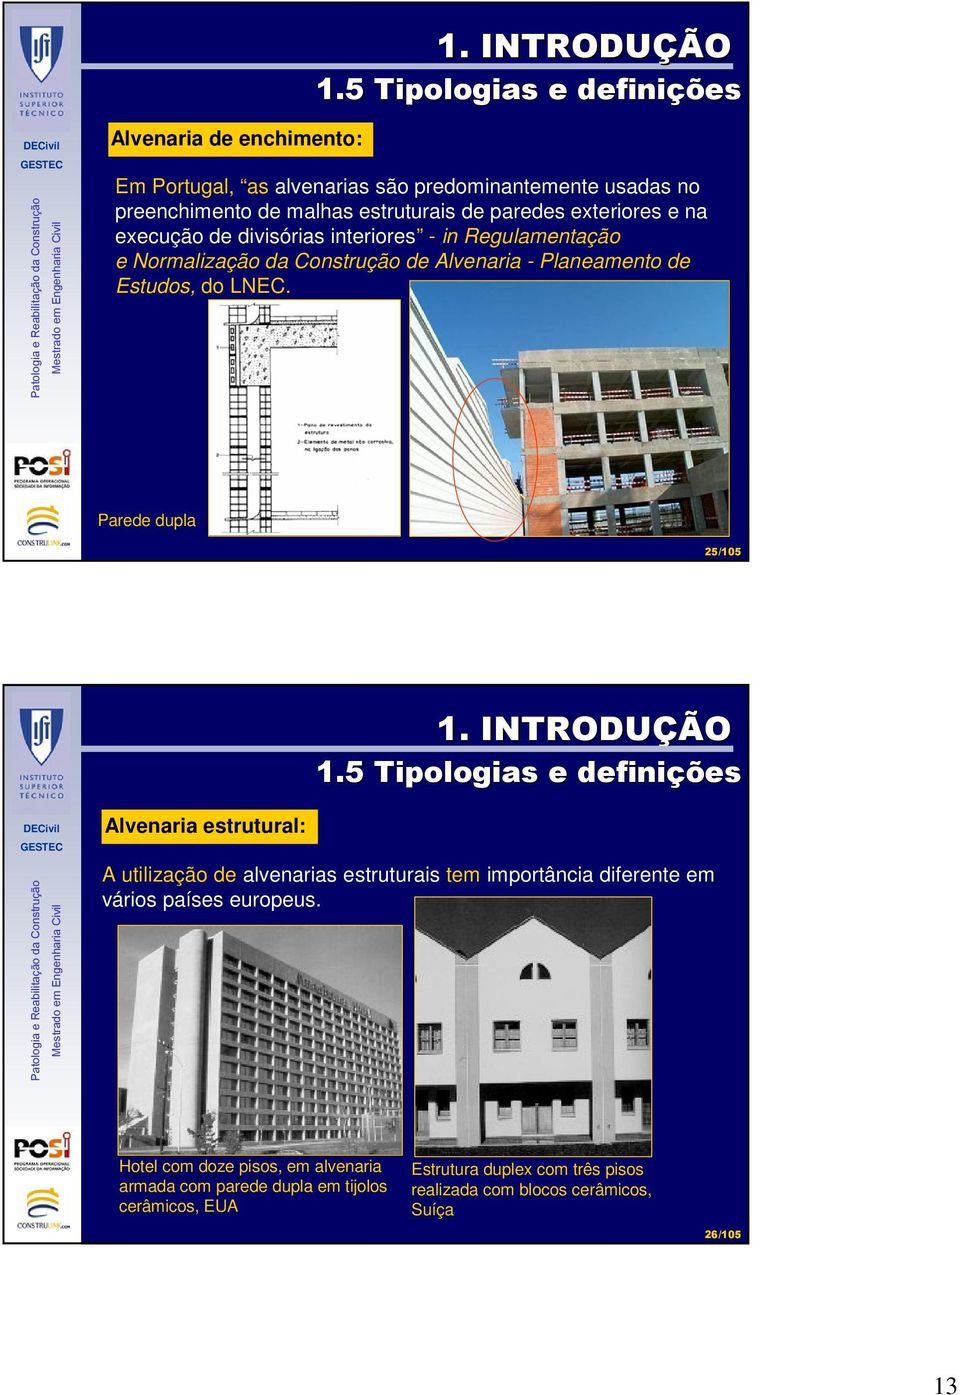 exteriores e na execução de divisórias interiores - in Regulamentação e Normalização da Construção de Alvenaria - Planeamento de Estudos, do LNEC.